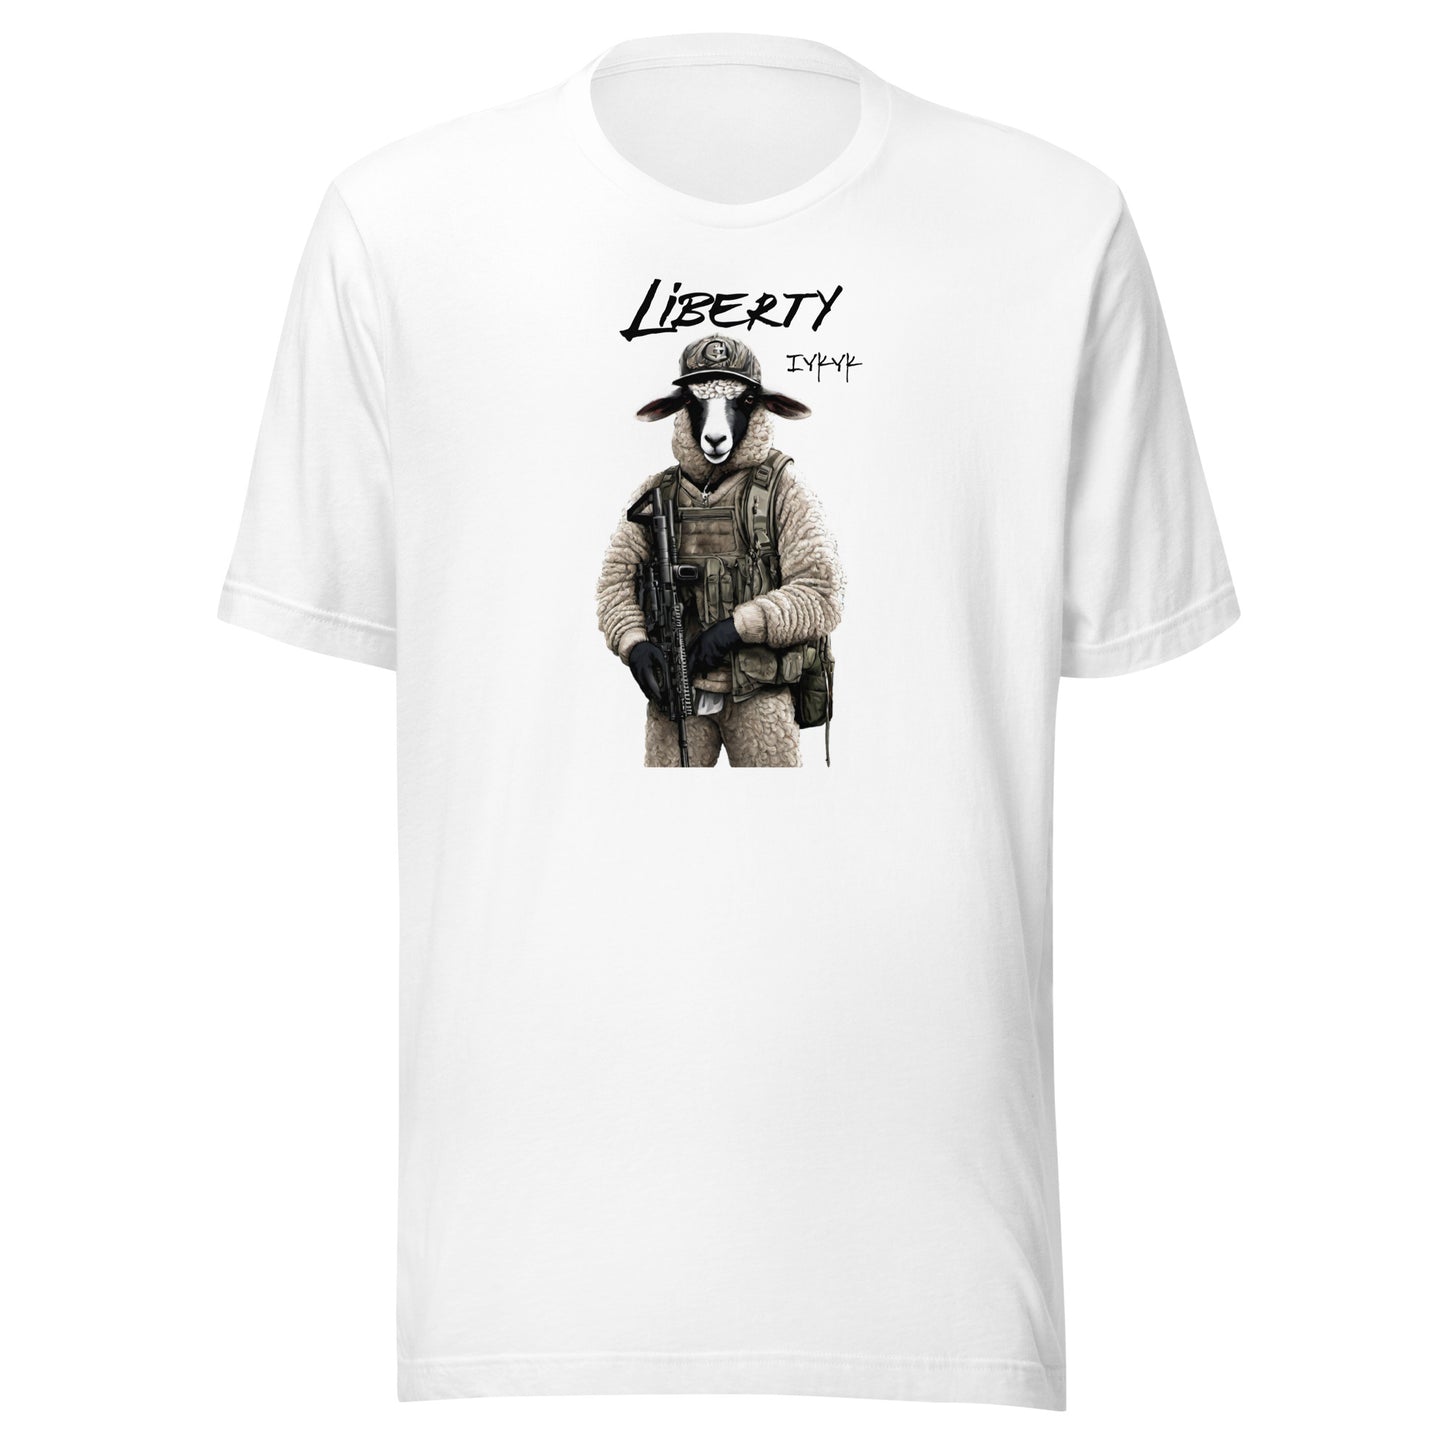 Liberty Lamb 2nd Amendment Graphic T-Shirt White